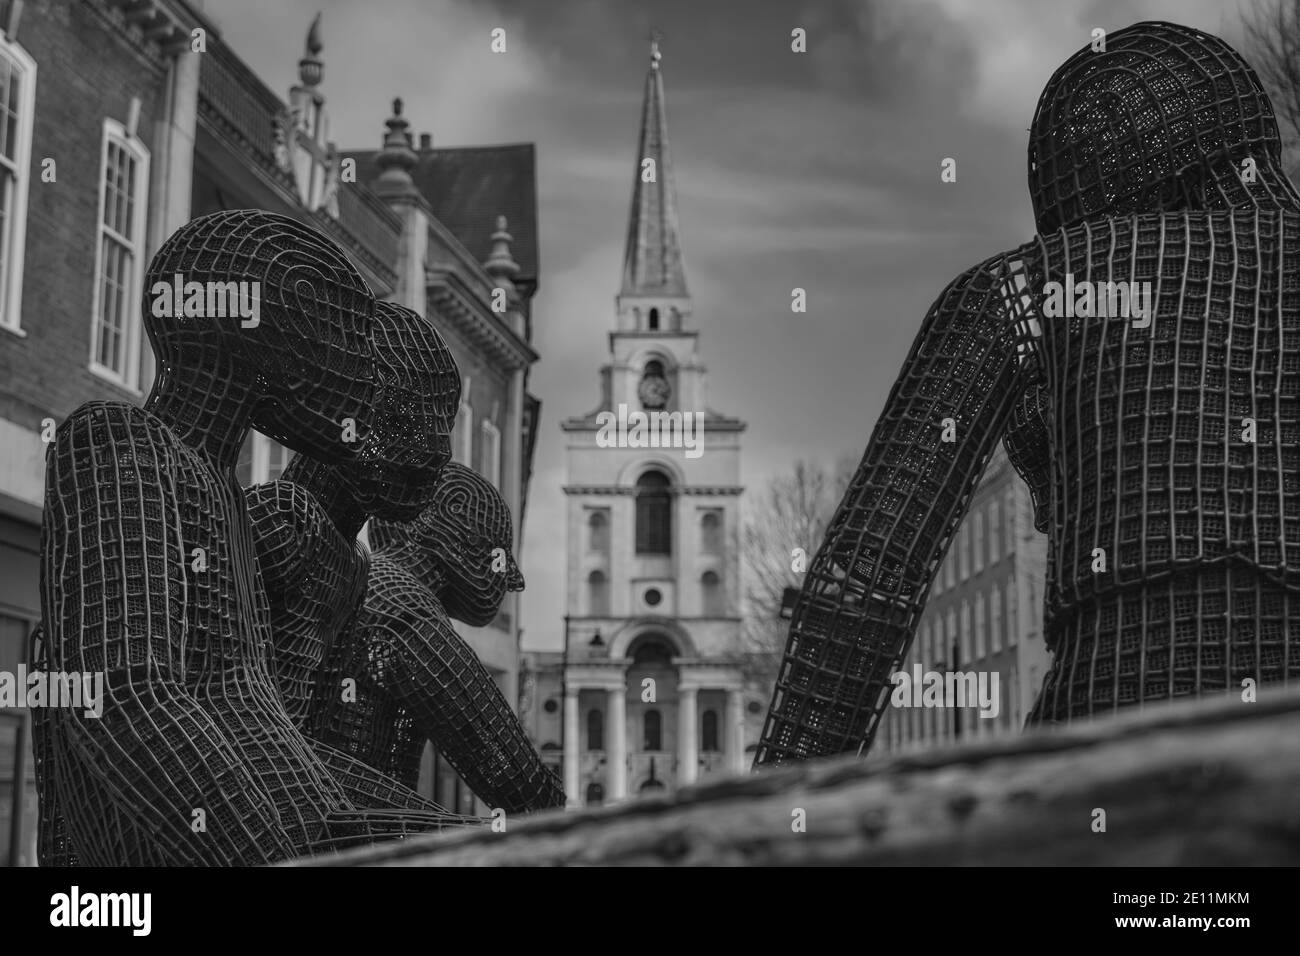 Sculpture commémorative aux réfugiés de bateaux perdus par Kalliopi Lemos, Christ Church Spitalfields in the background, Londres, Royaume-Uni, 3 janvier 2021 Banque D'Images